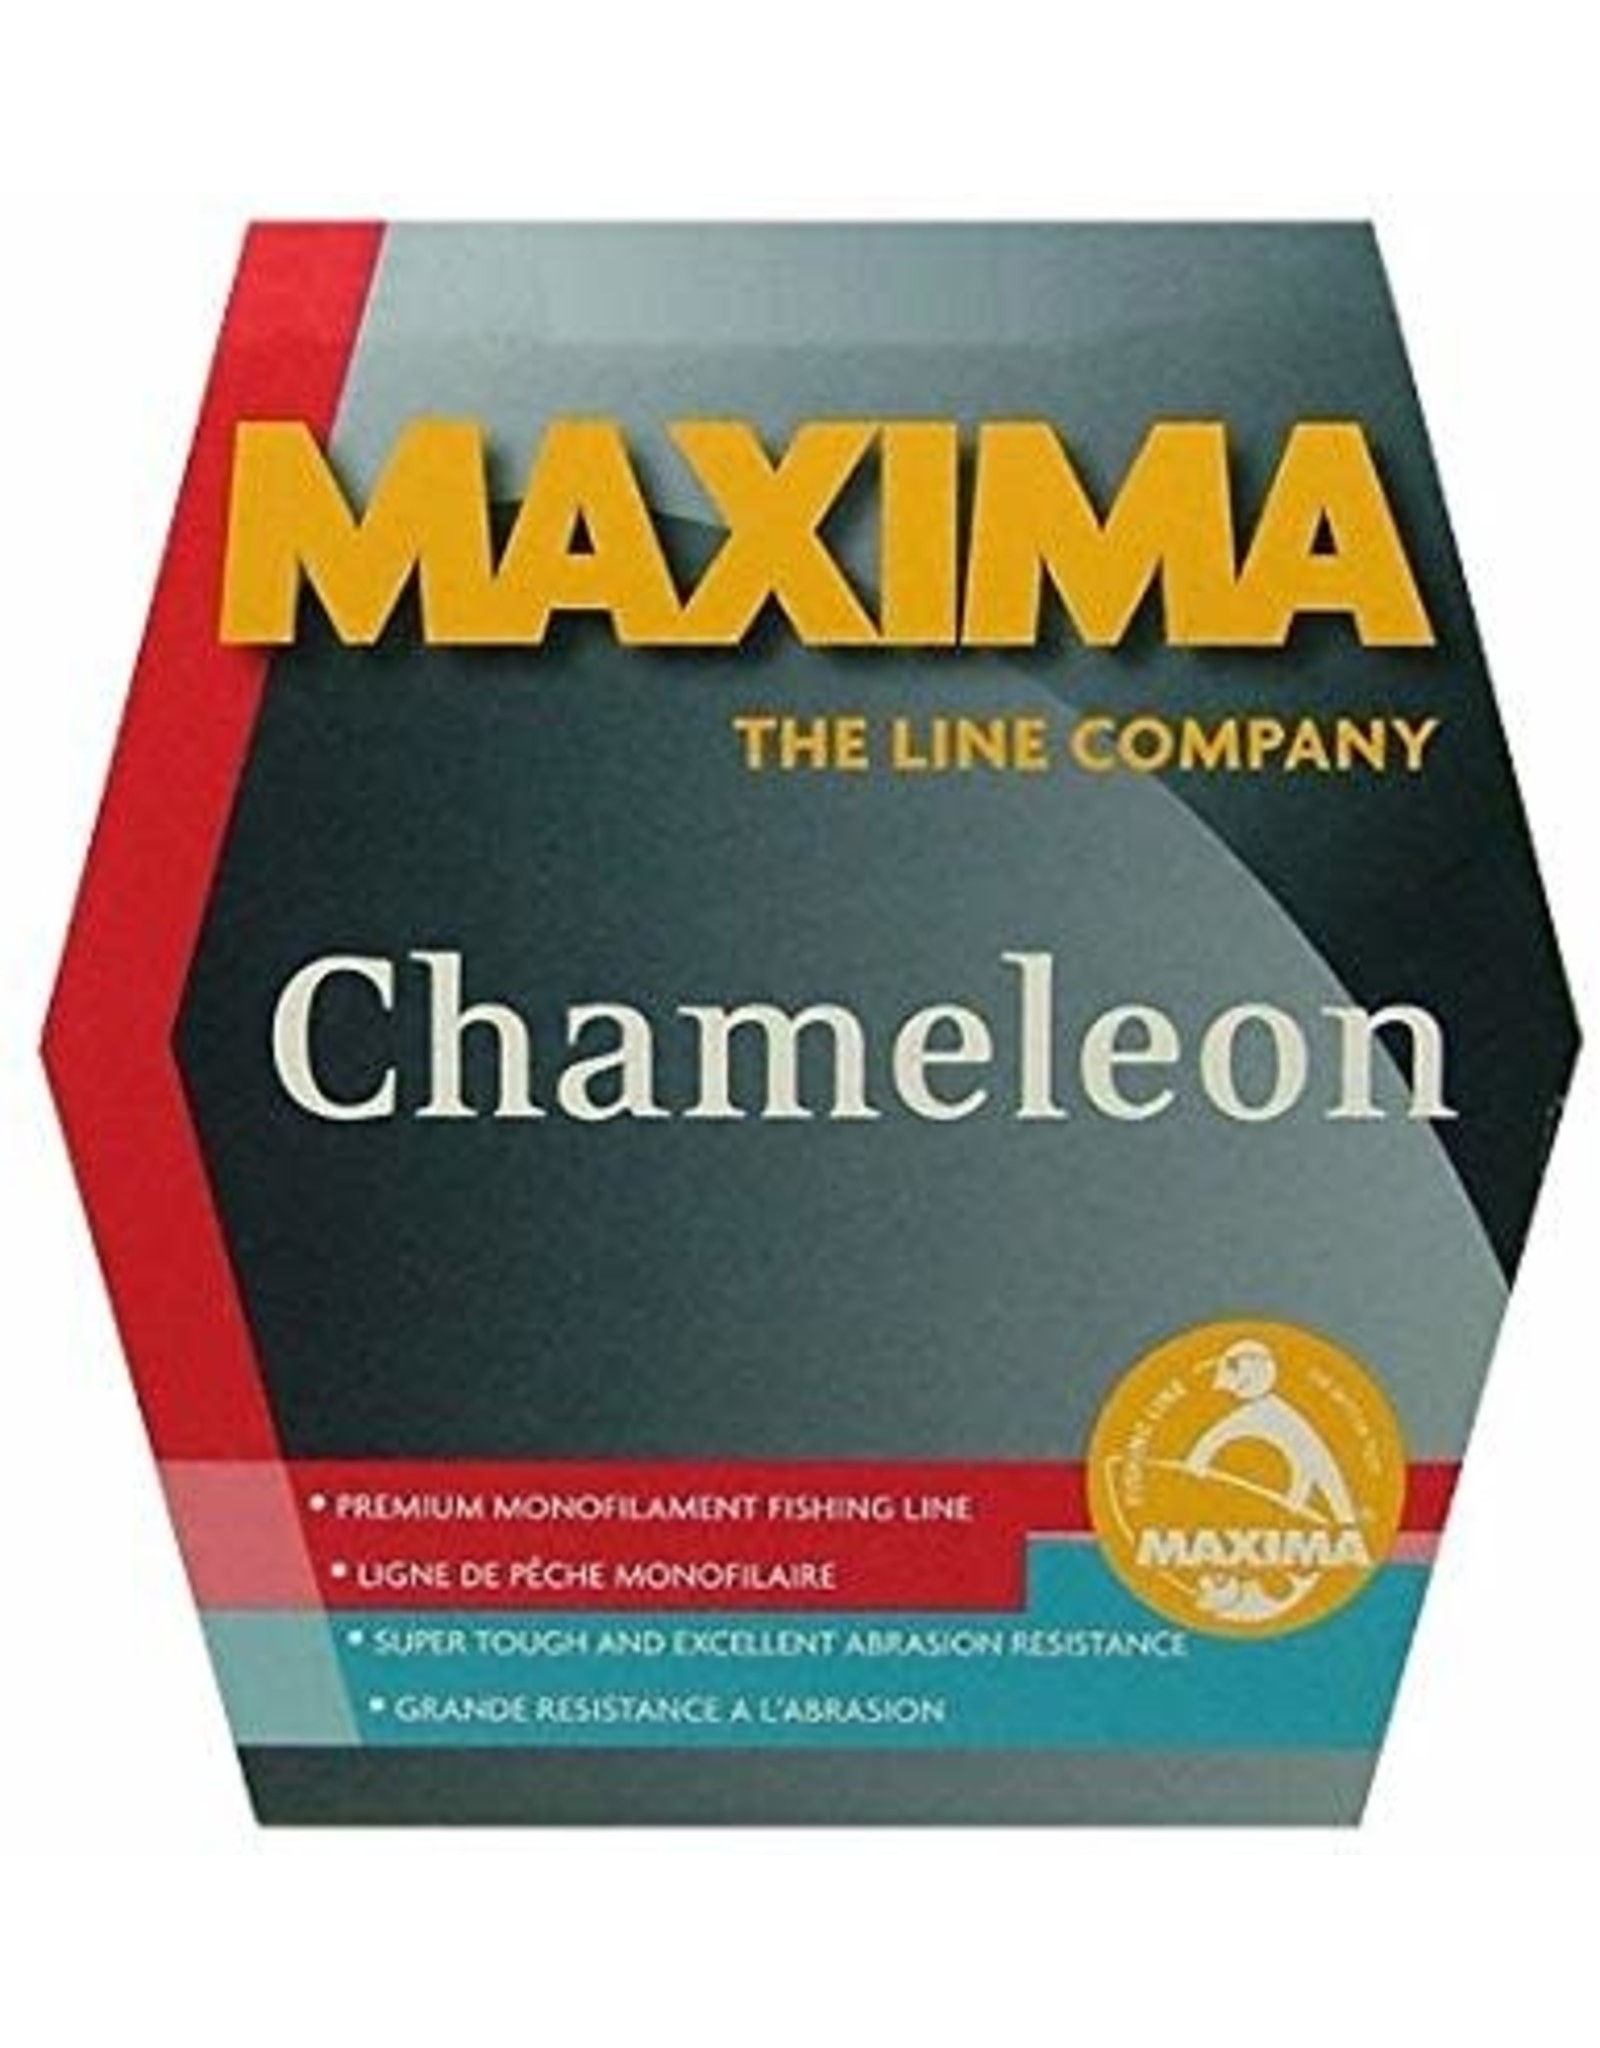 Maxima Maxima Chameleon 280 Yds 6#